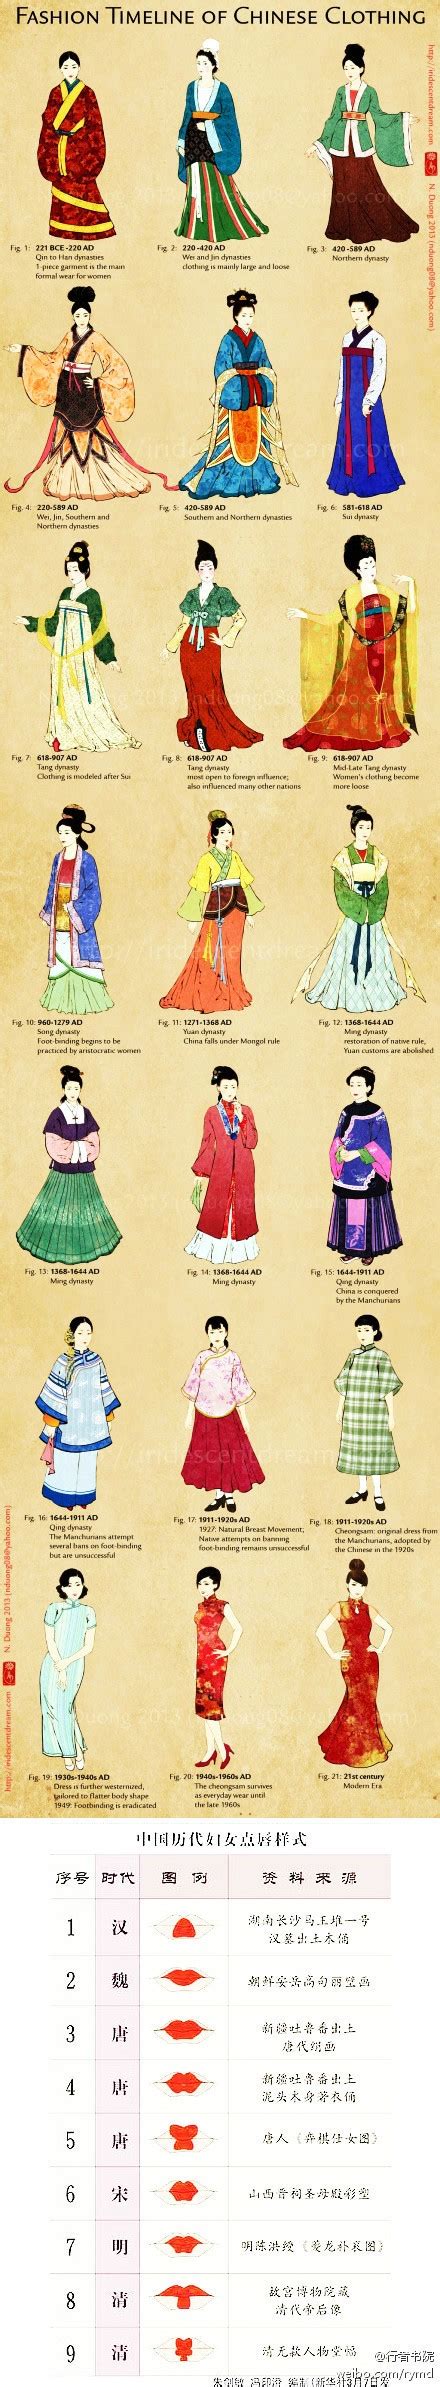 【中国历代女子服饰】fashion timeline of chinese clothing fashion history timeline chinese clothing